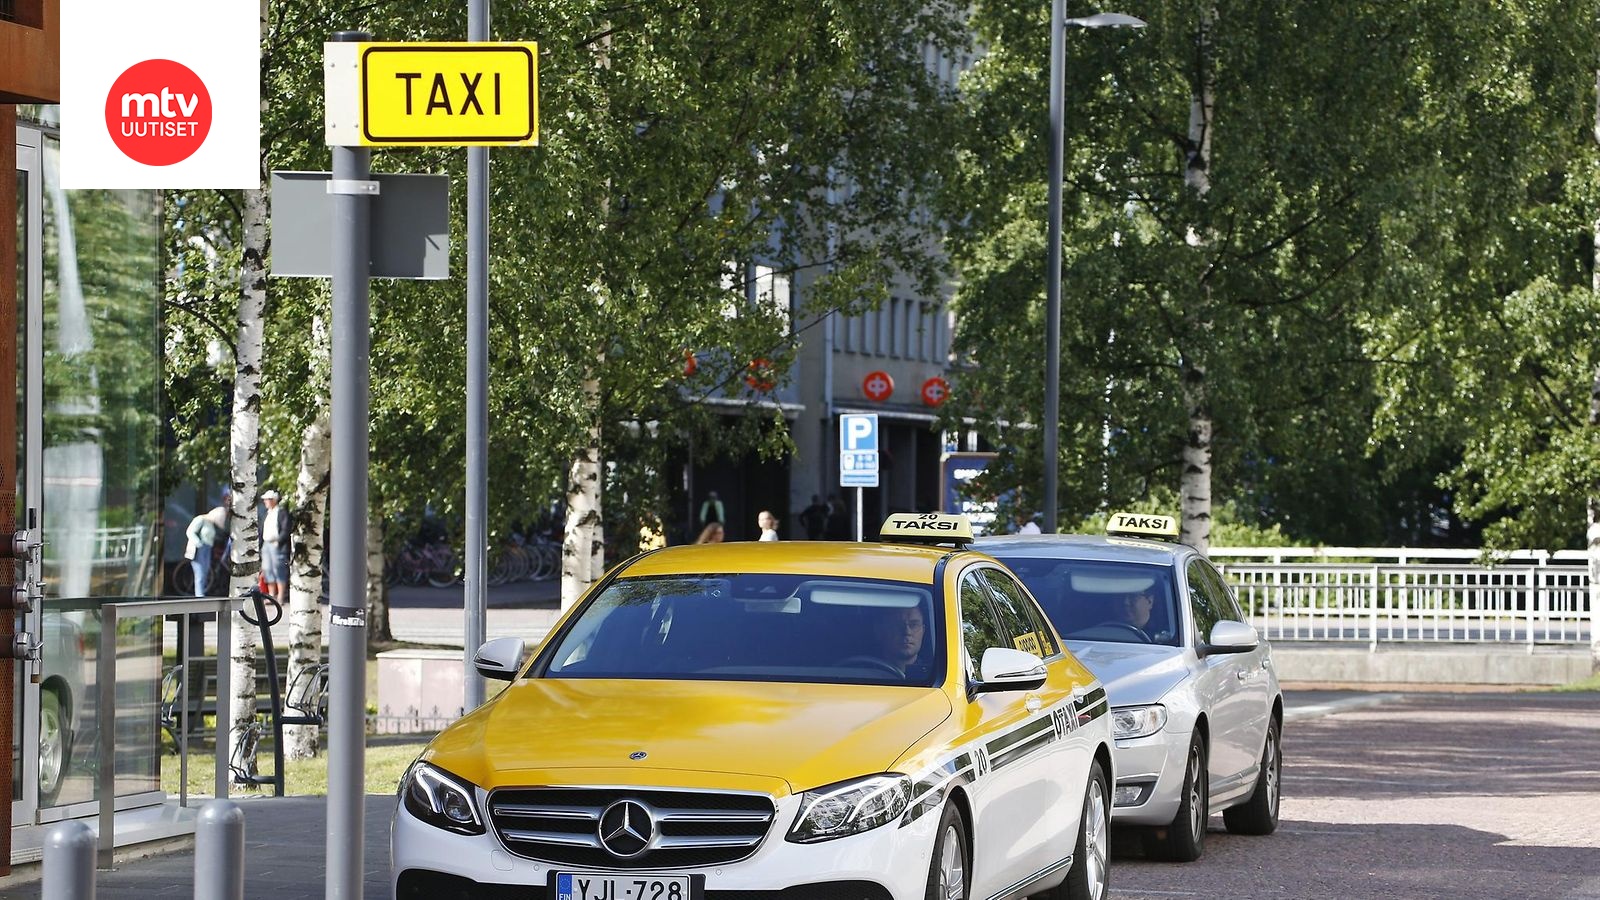 Uusi taksilaki tuo kuluttajalle valinnanvaraa, mutta vertailu voi käydä  työlääksi – 